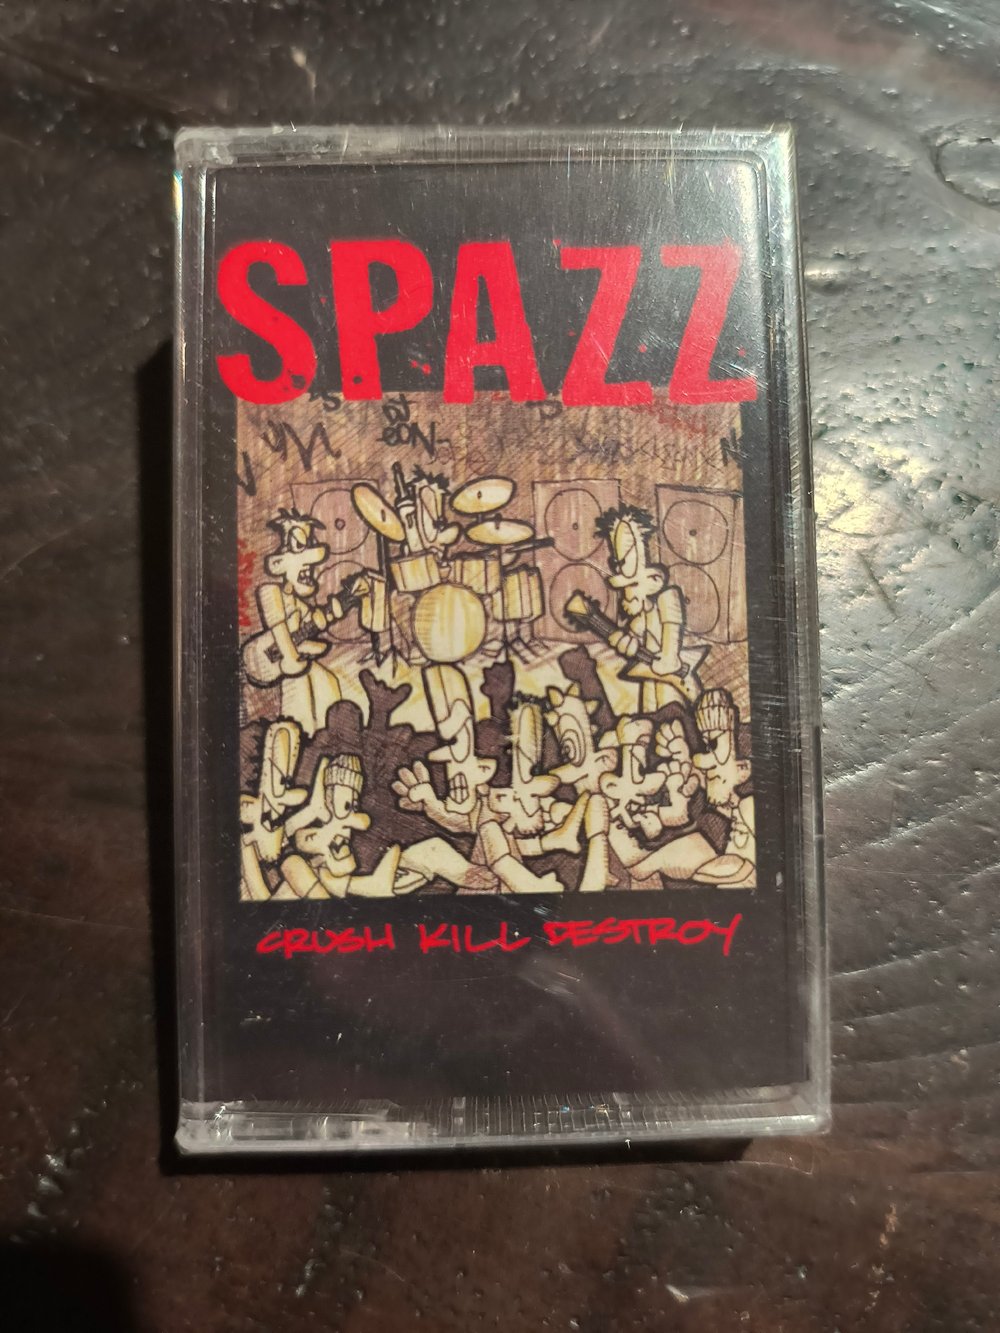 Spazz - Crush Kill Destroy - Cassette Tape 